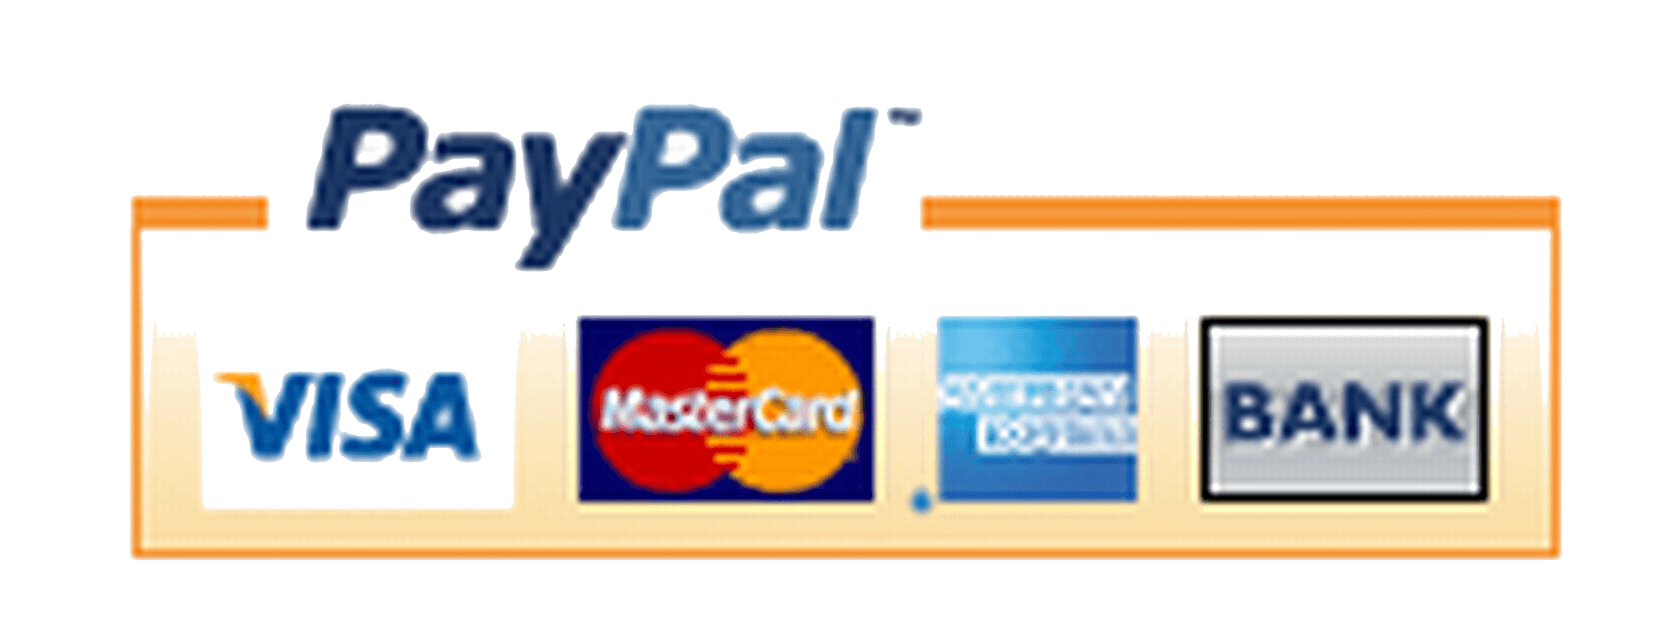 I Accept PayPal Logo - Paypal Logos